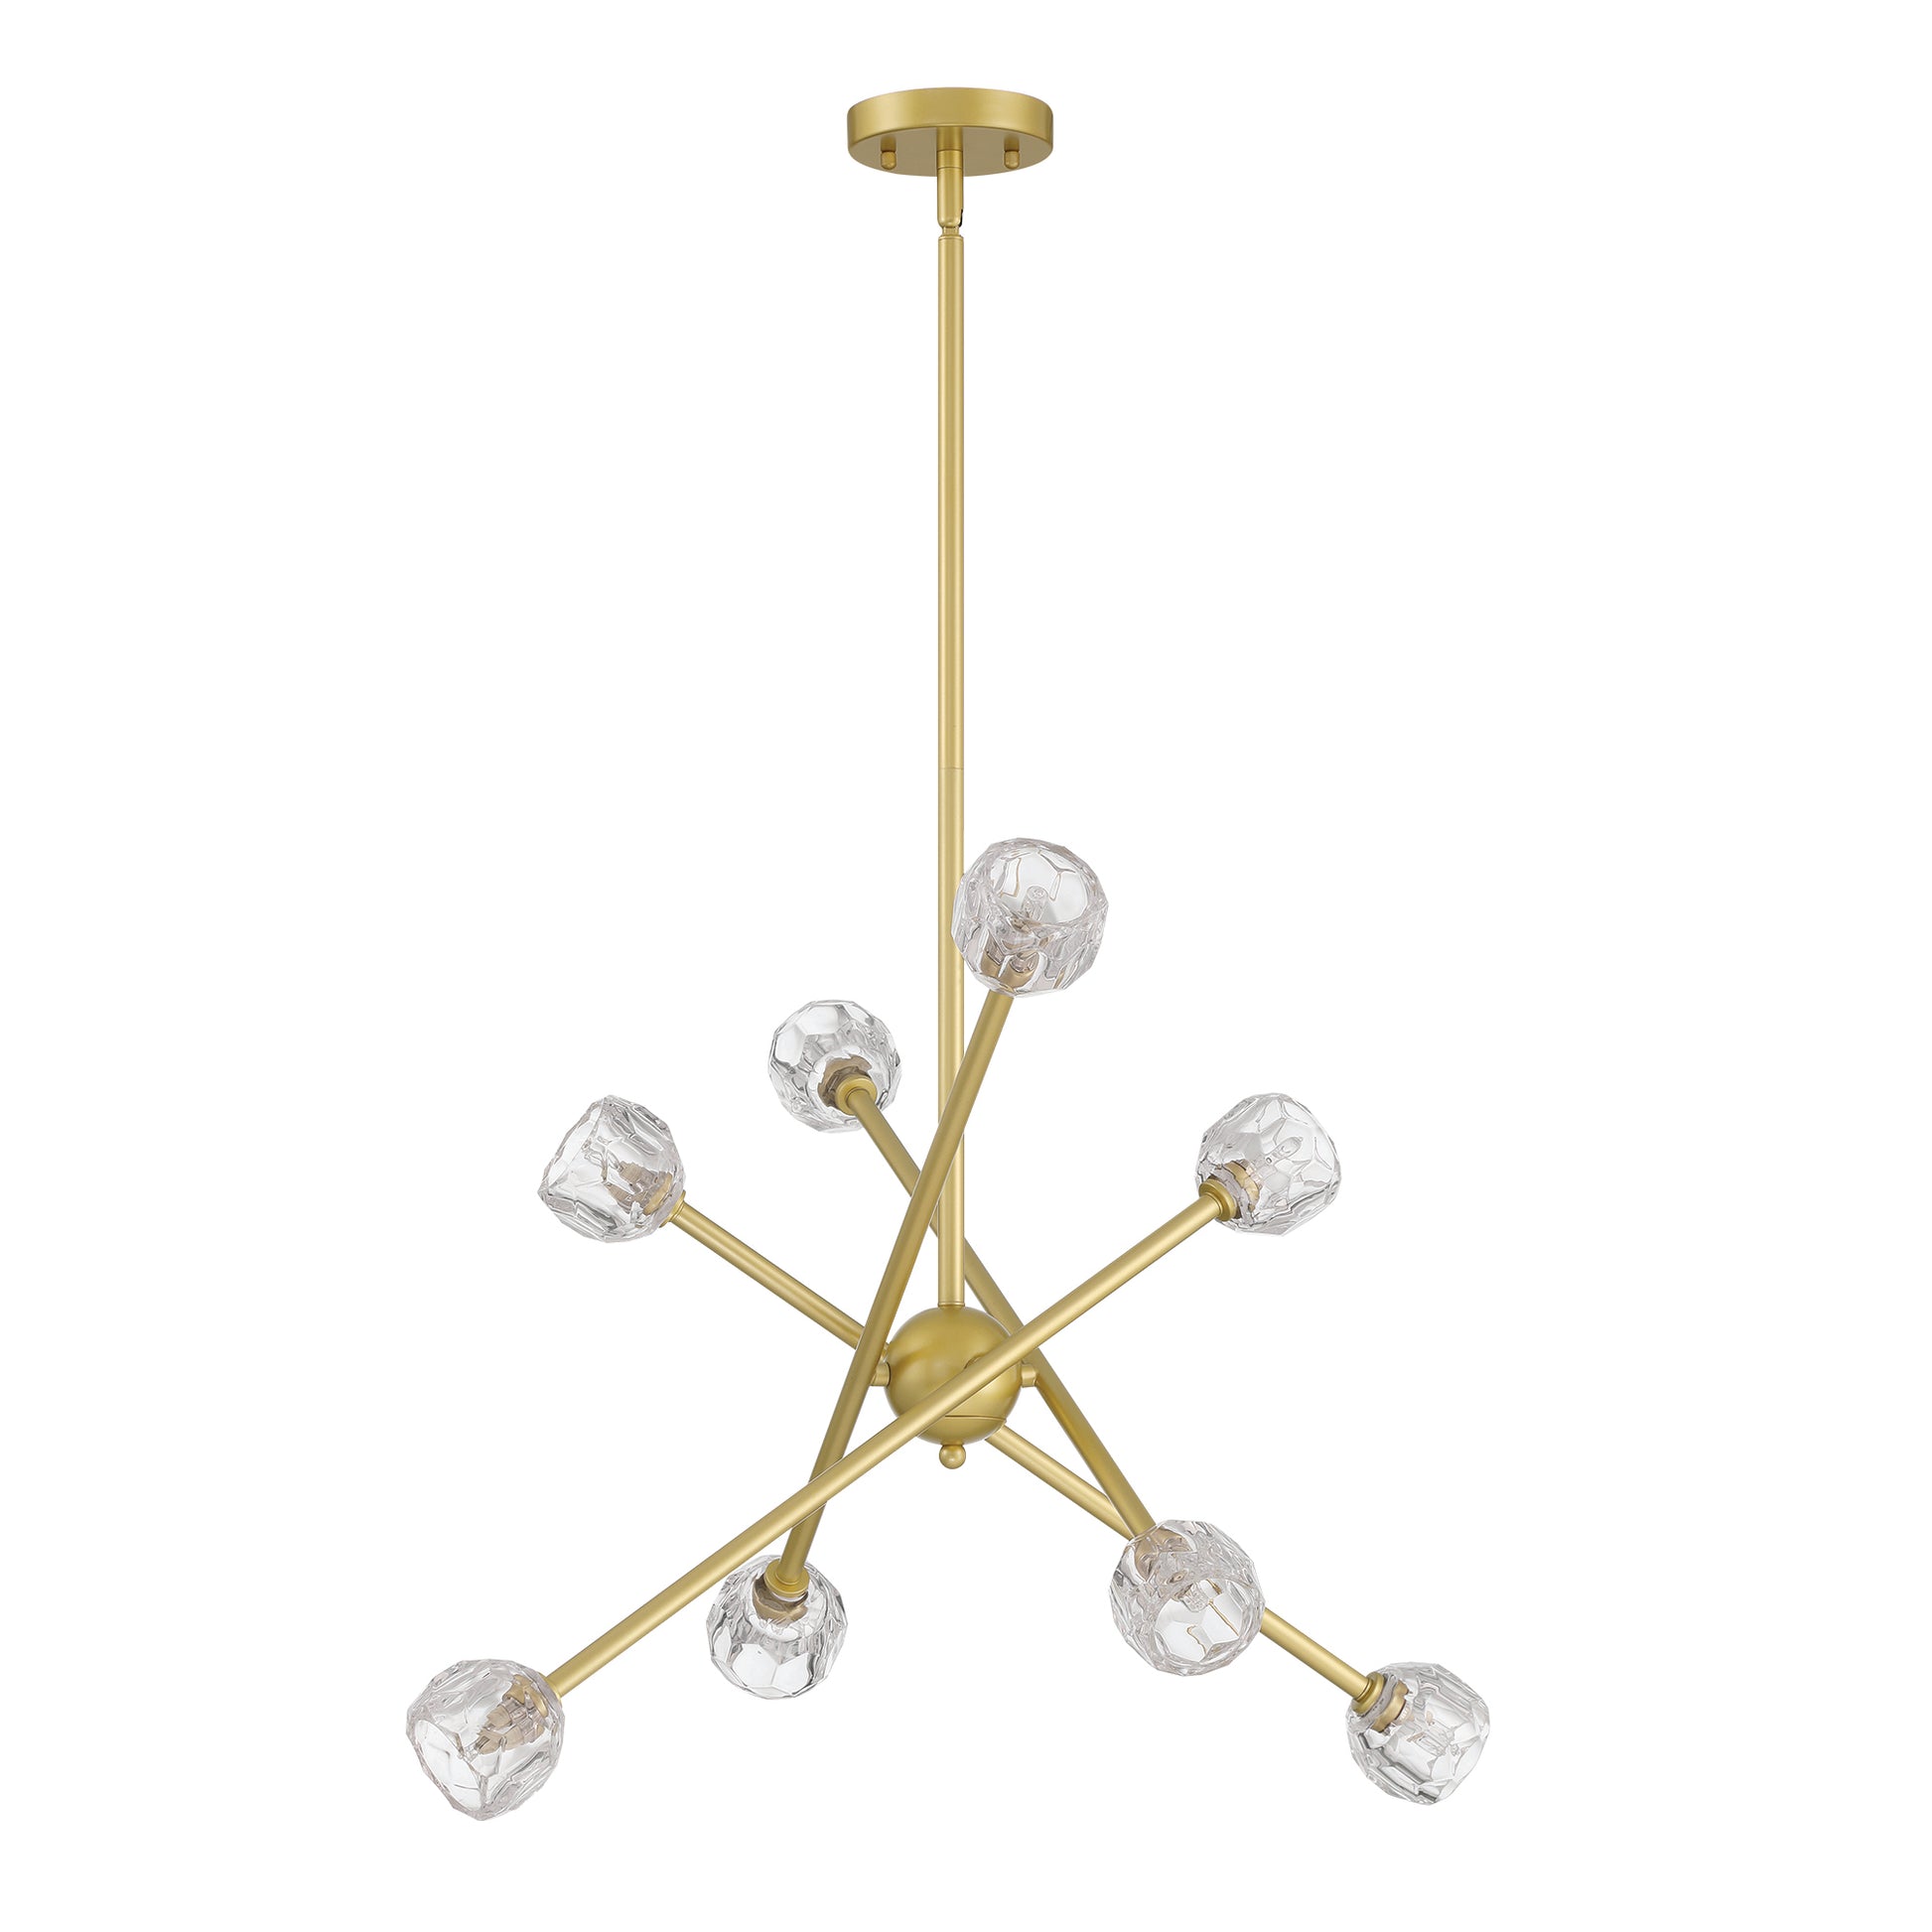 8 light sputnik glass chandelier (6) by ACROMA